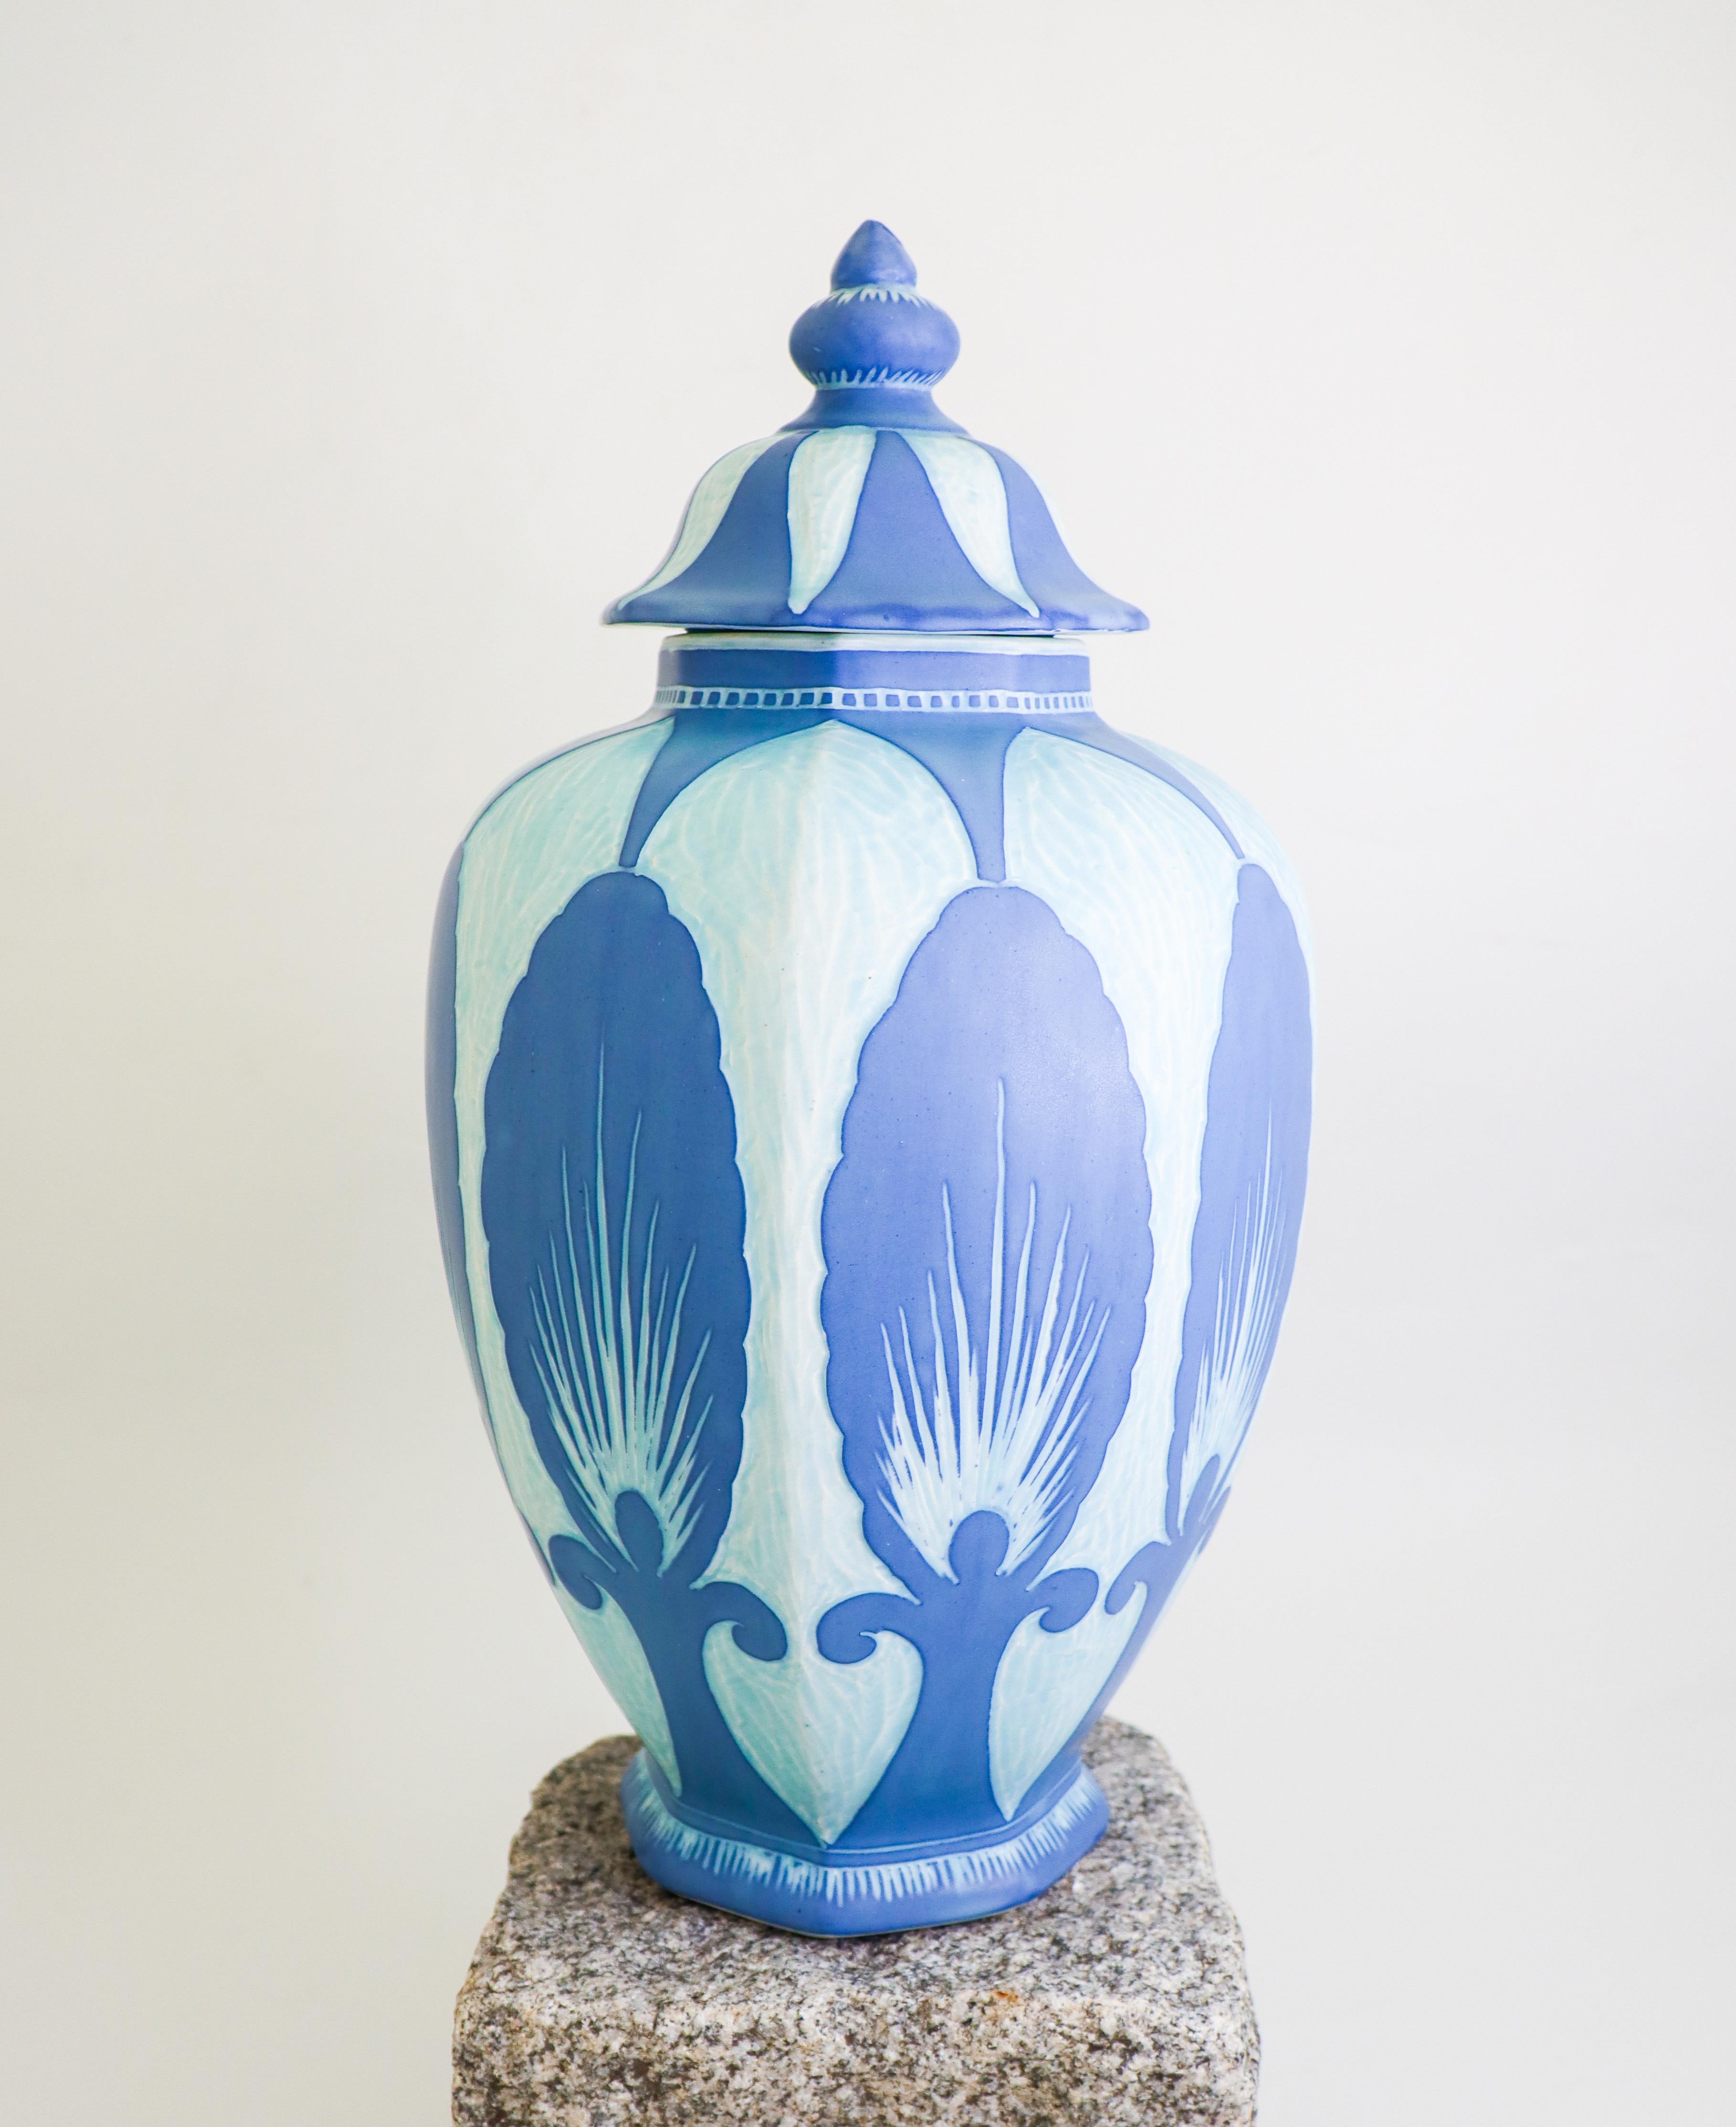 Grande urne à couvercle art nouveau en céramique conçue par Josef Ekberg à Gustavsberg en 1925. L'urne mesure 39 cm de haut, ce qui en fait une pièce unique et spectaculaire de la série Sgrafitto.  